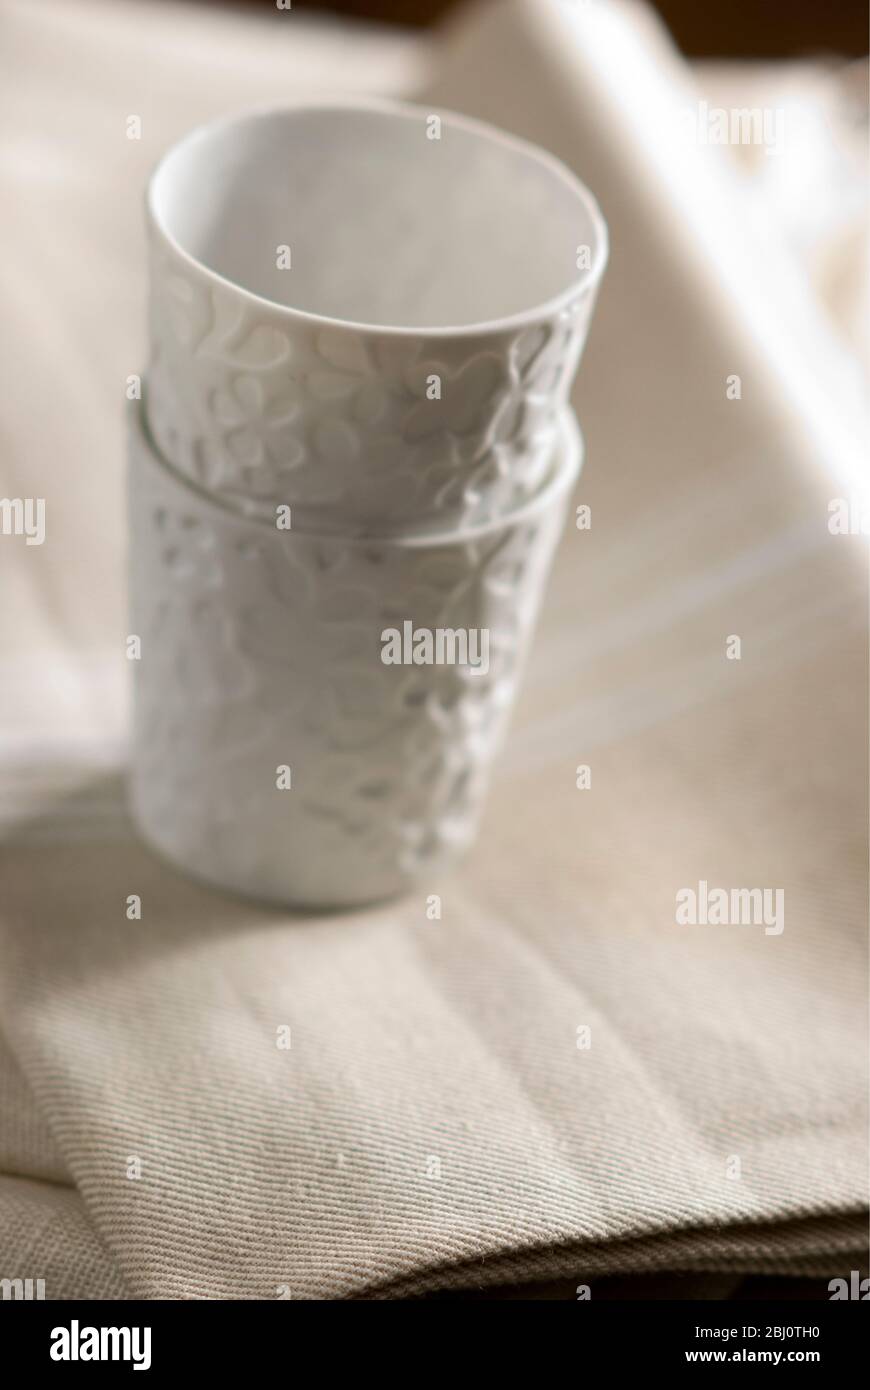 Weiße Porzellanbecher oder Teelicht-Halter auf cremefarbenen Leinentuch gestapelt - Stockfoto